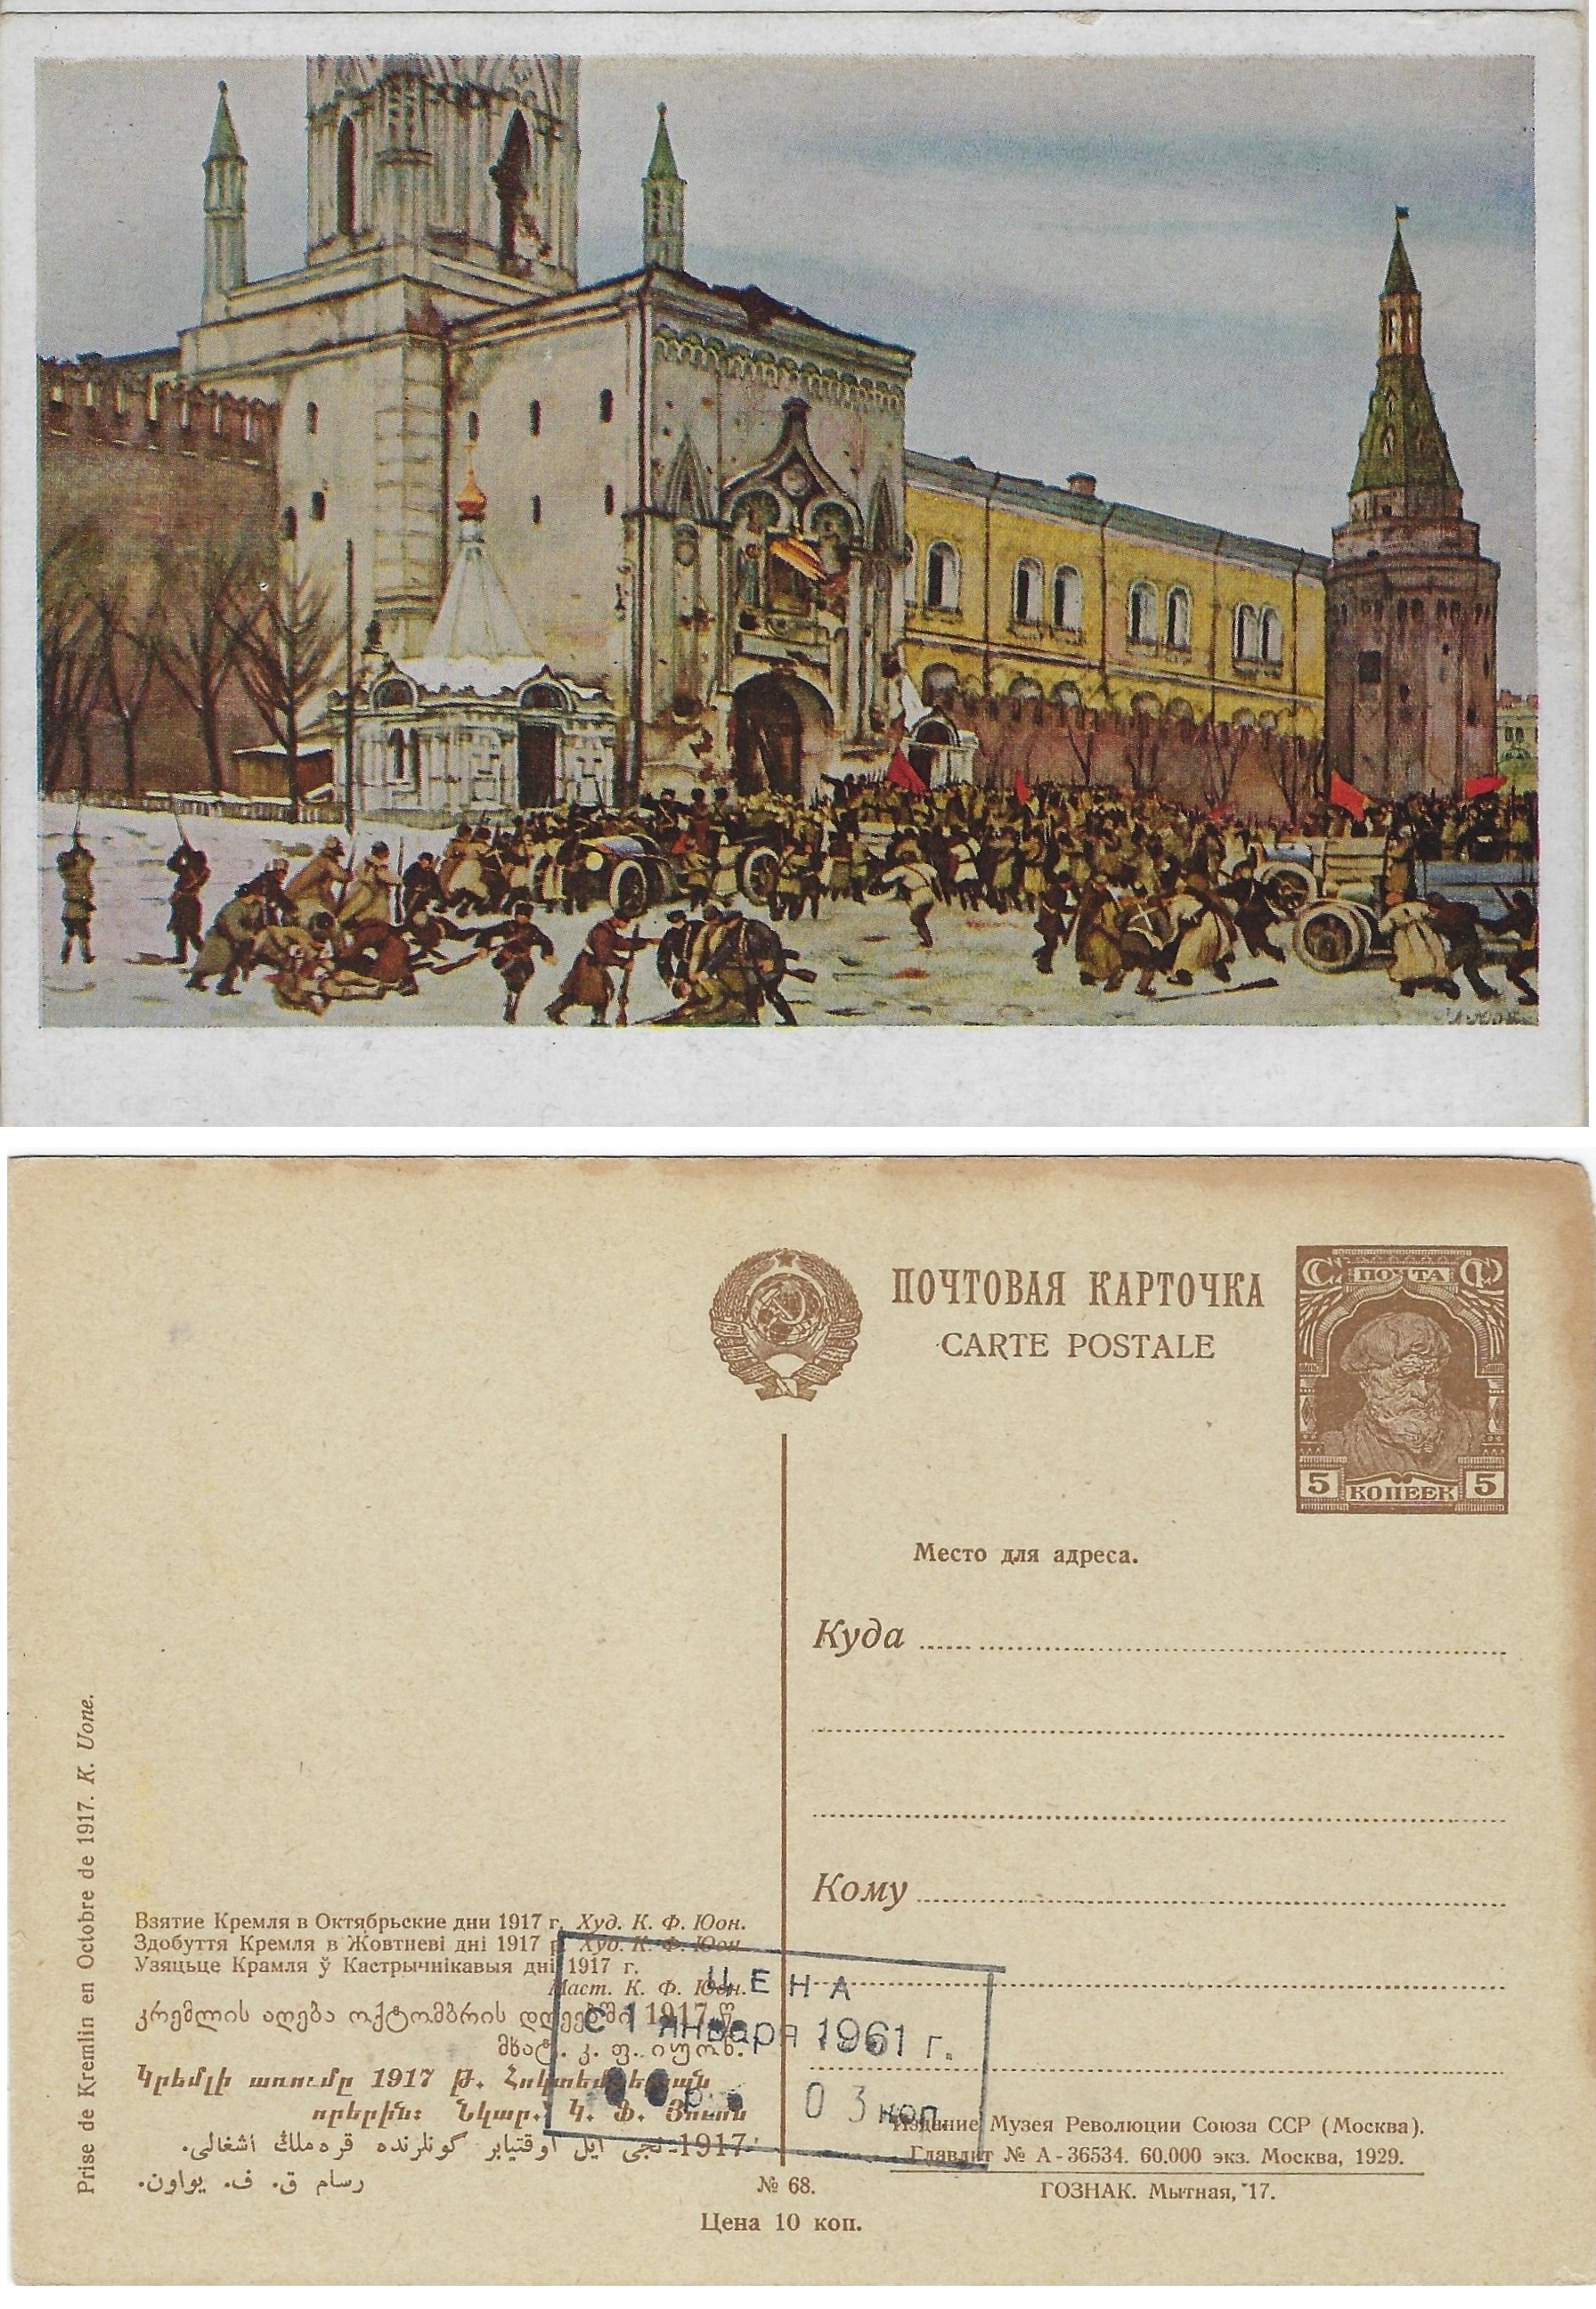 Postal Stationery - Soviet Union Scott 2268 Michel P61.68 